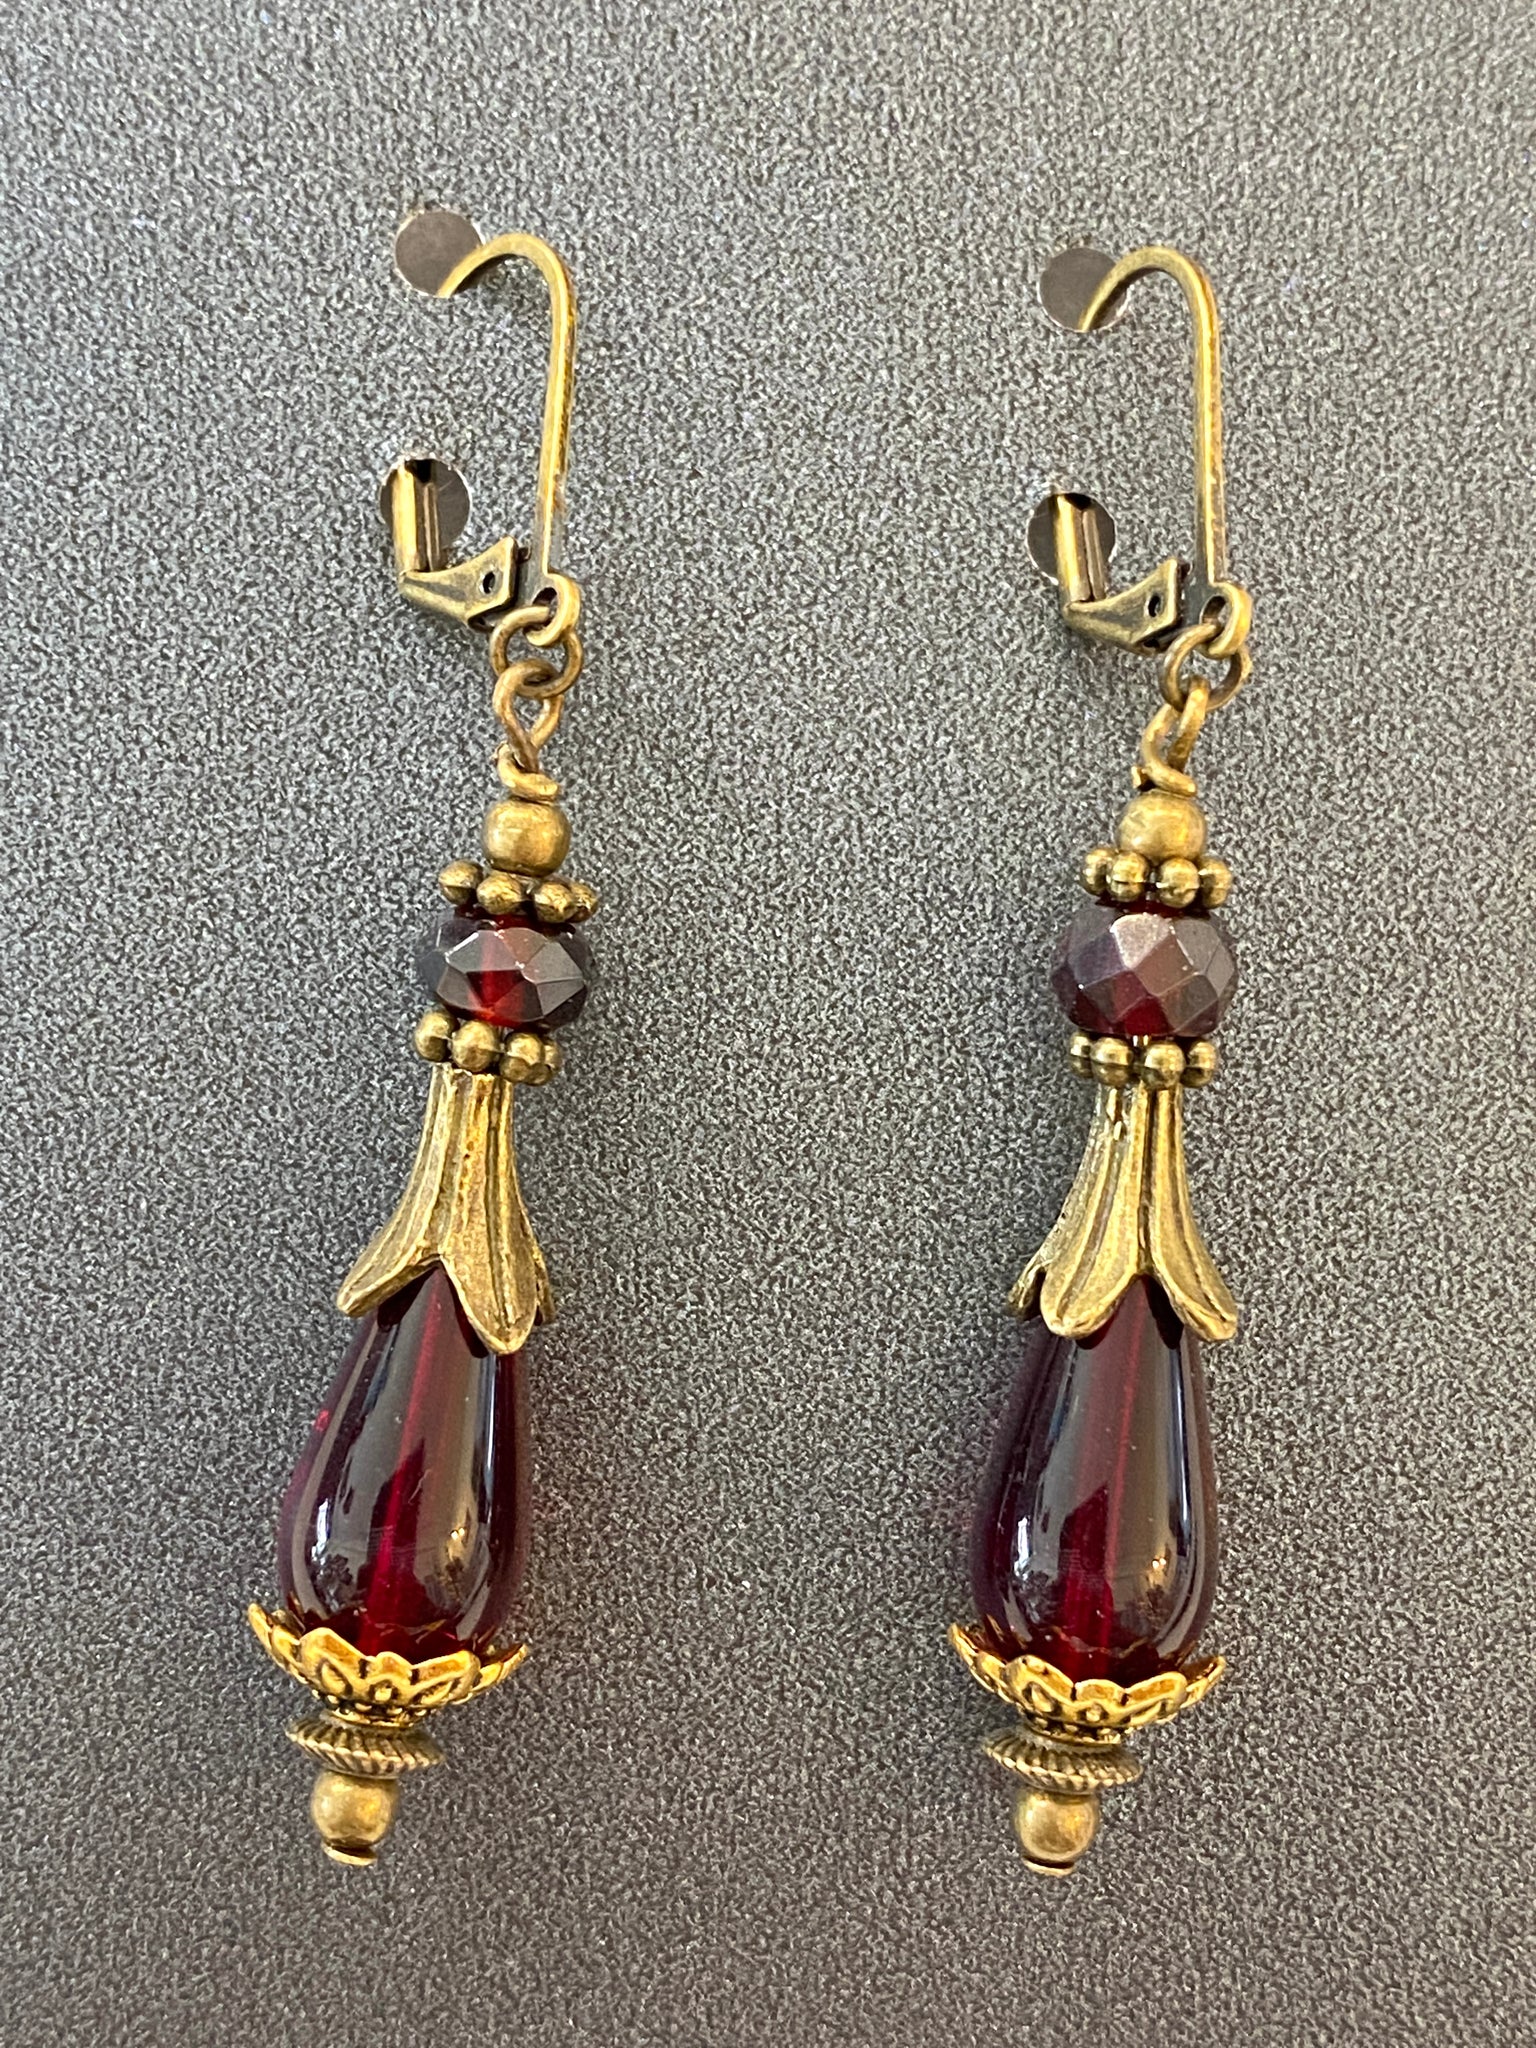 Garnet Long Dangle Earrings Made in PDX